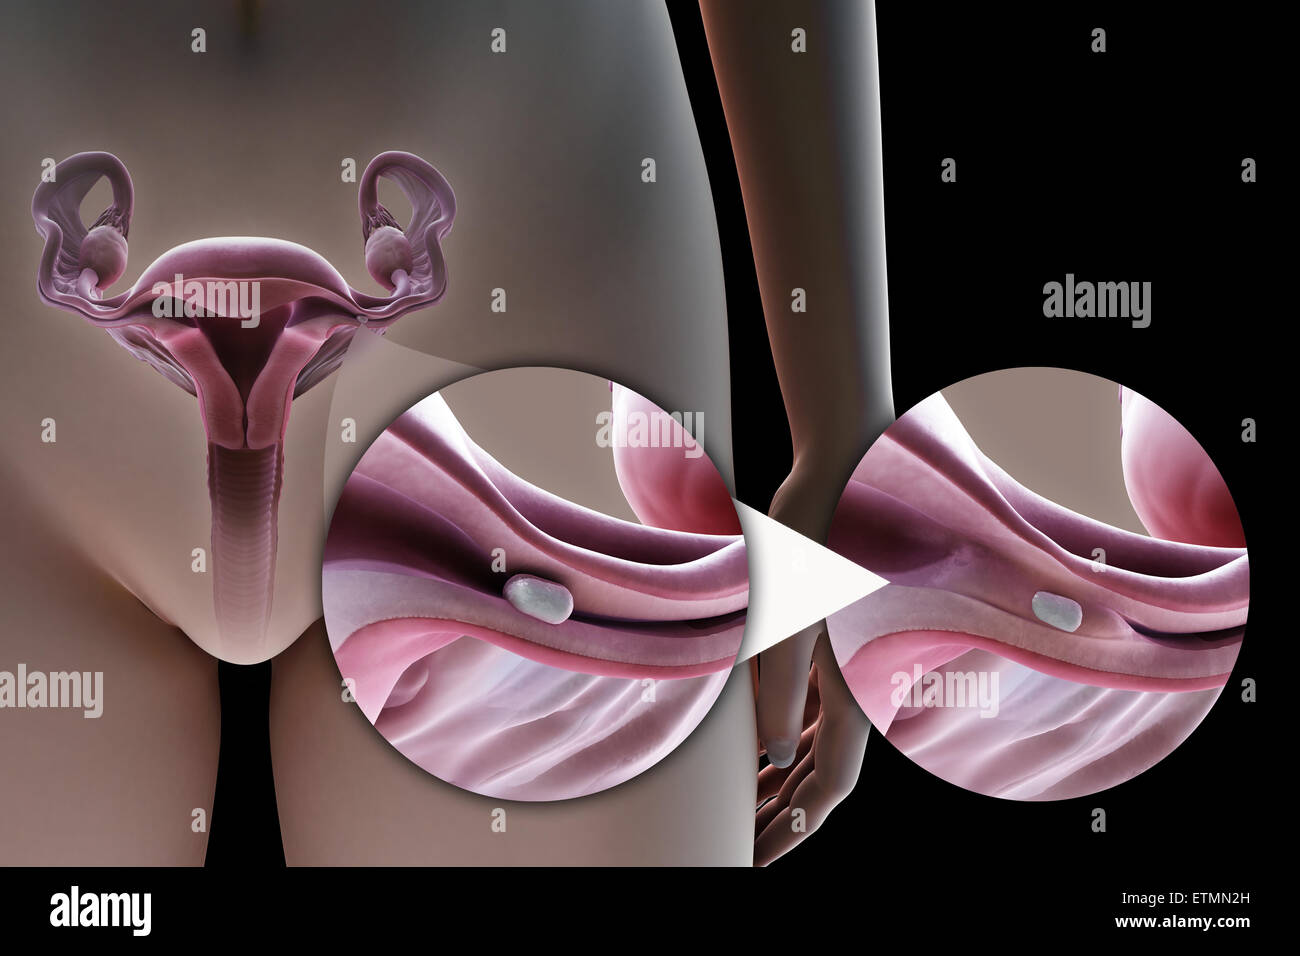 Illustration de la ligature des trompes de Fallope par la méthode d'un implant en silicone, utilisé pour bloquer le tube par la croissance de tissu cicatriciel et empêcher la fécondation. Banque D'Images